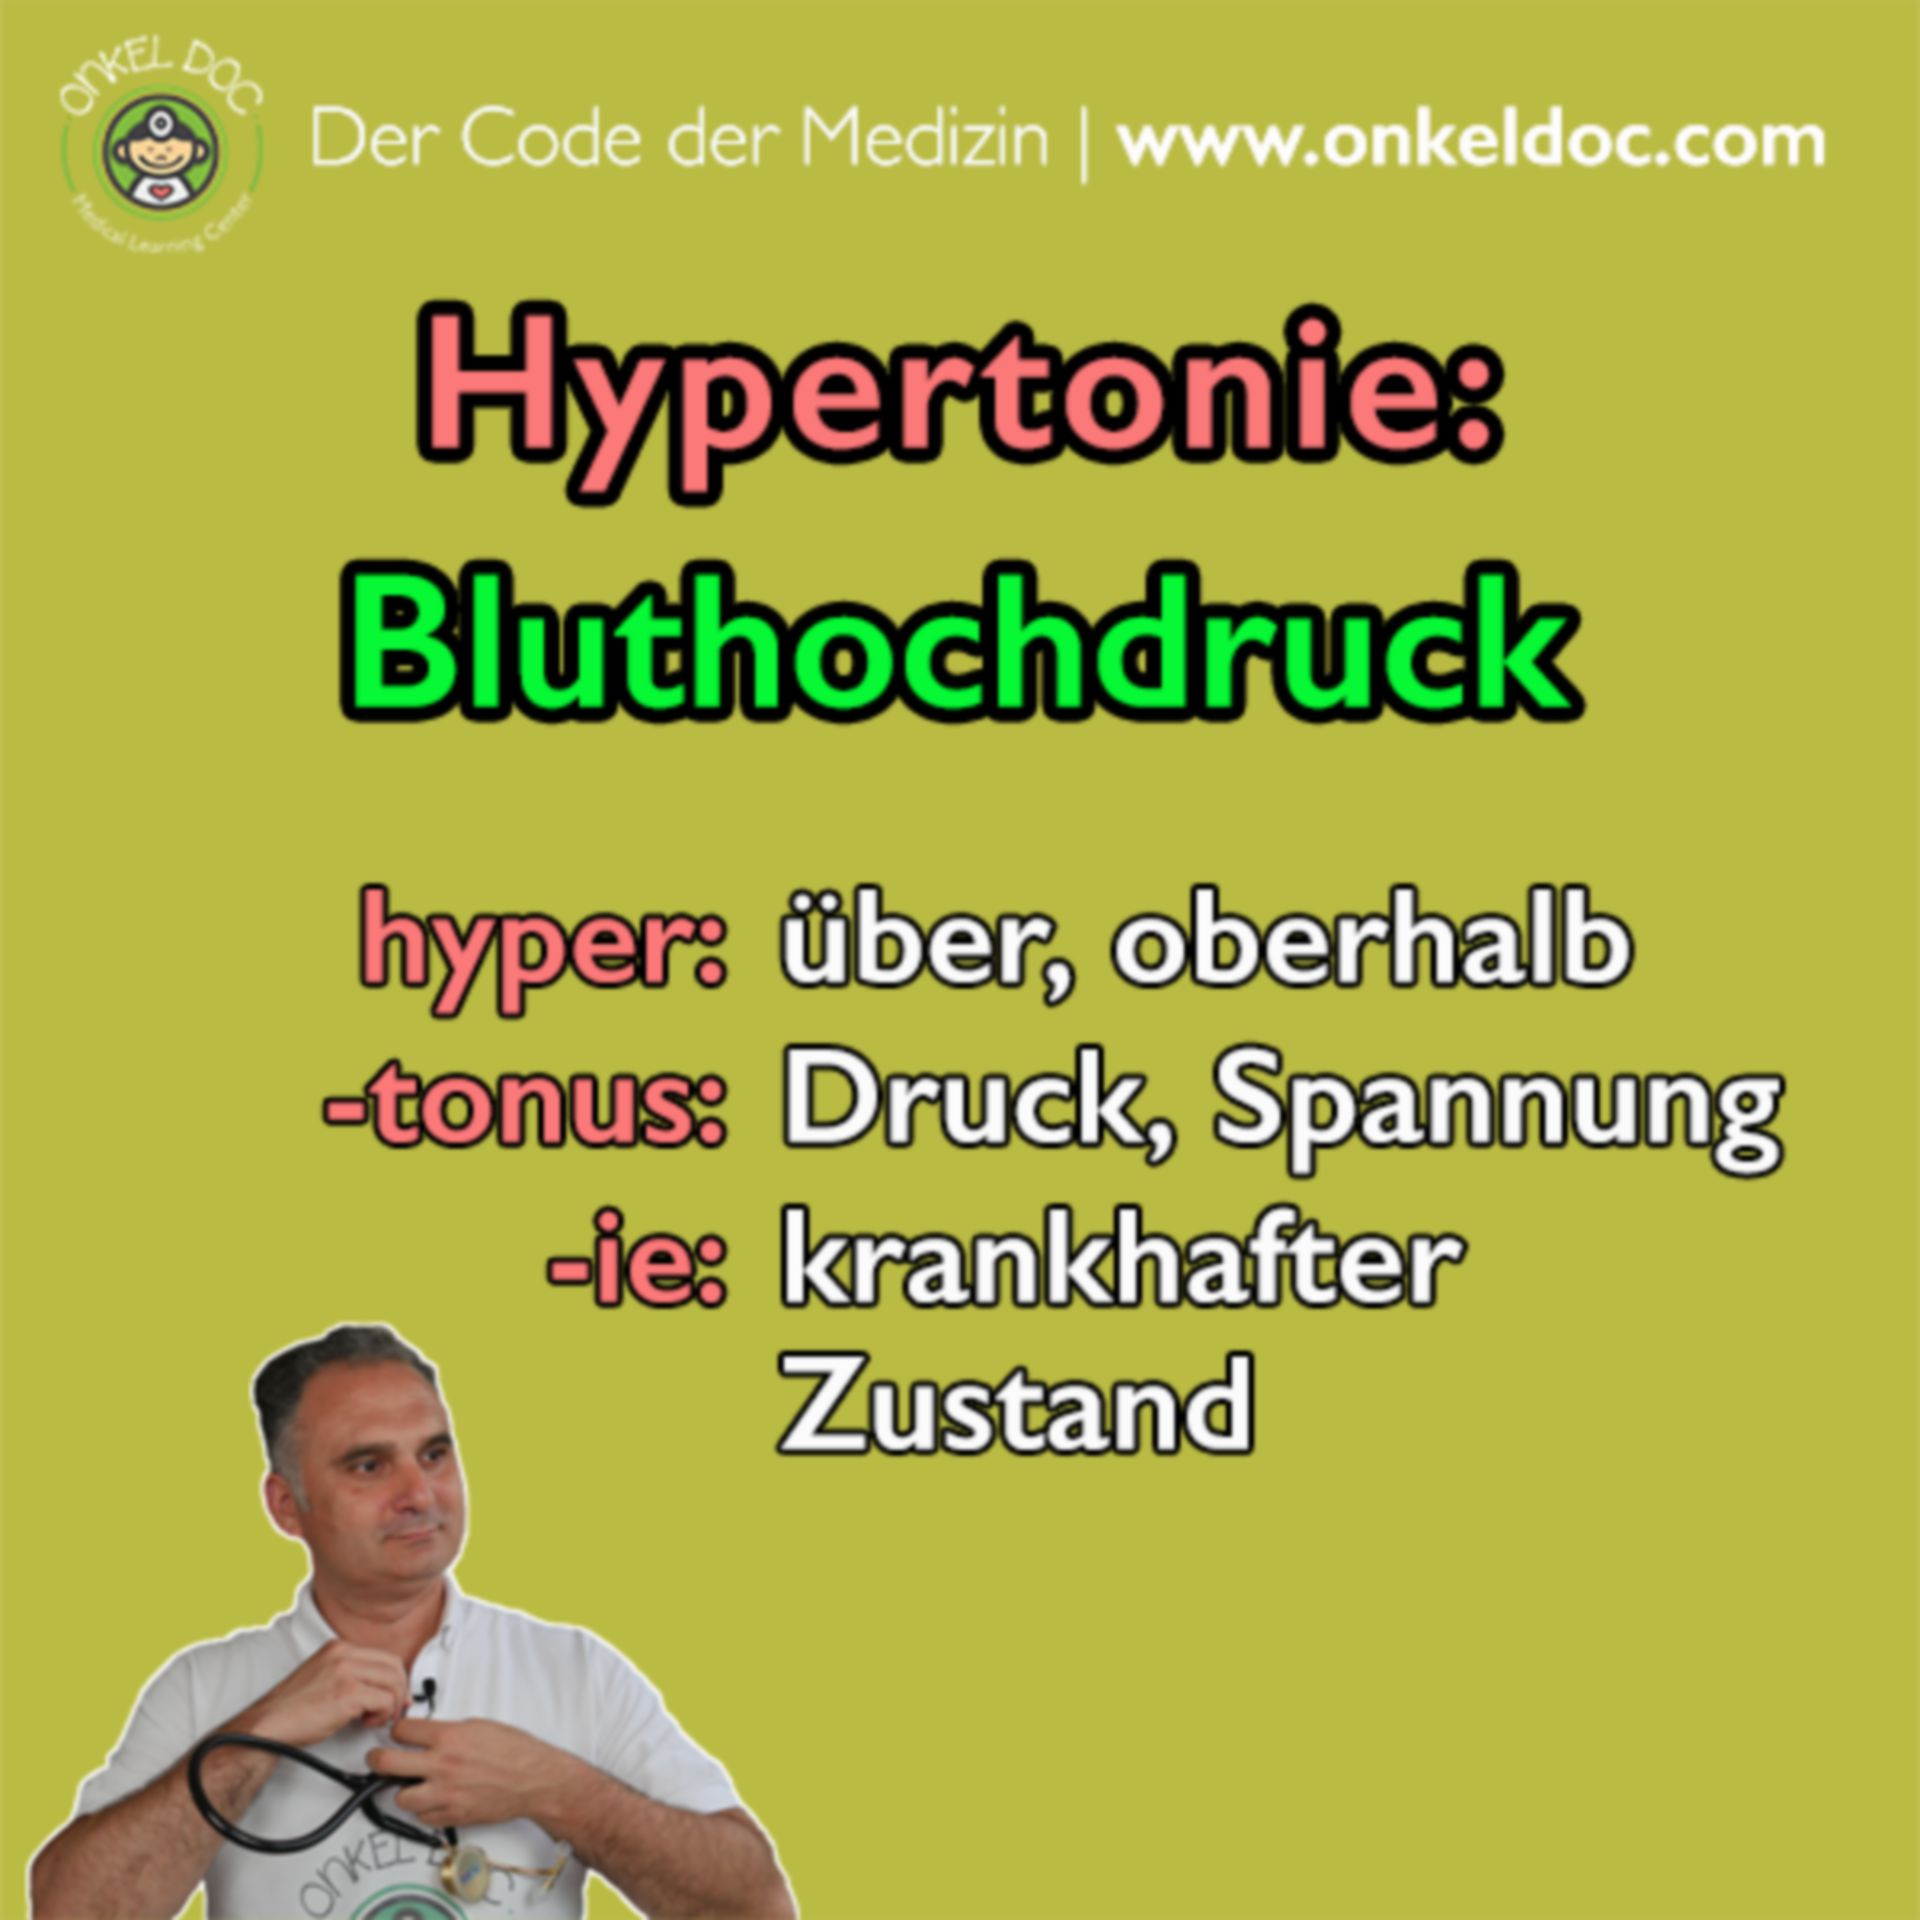 Der Code der Hypertonie